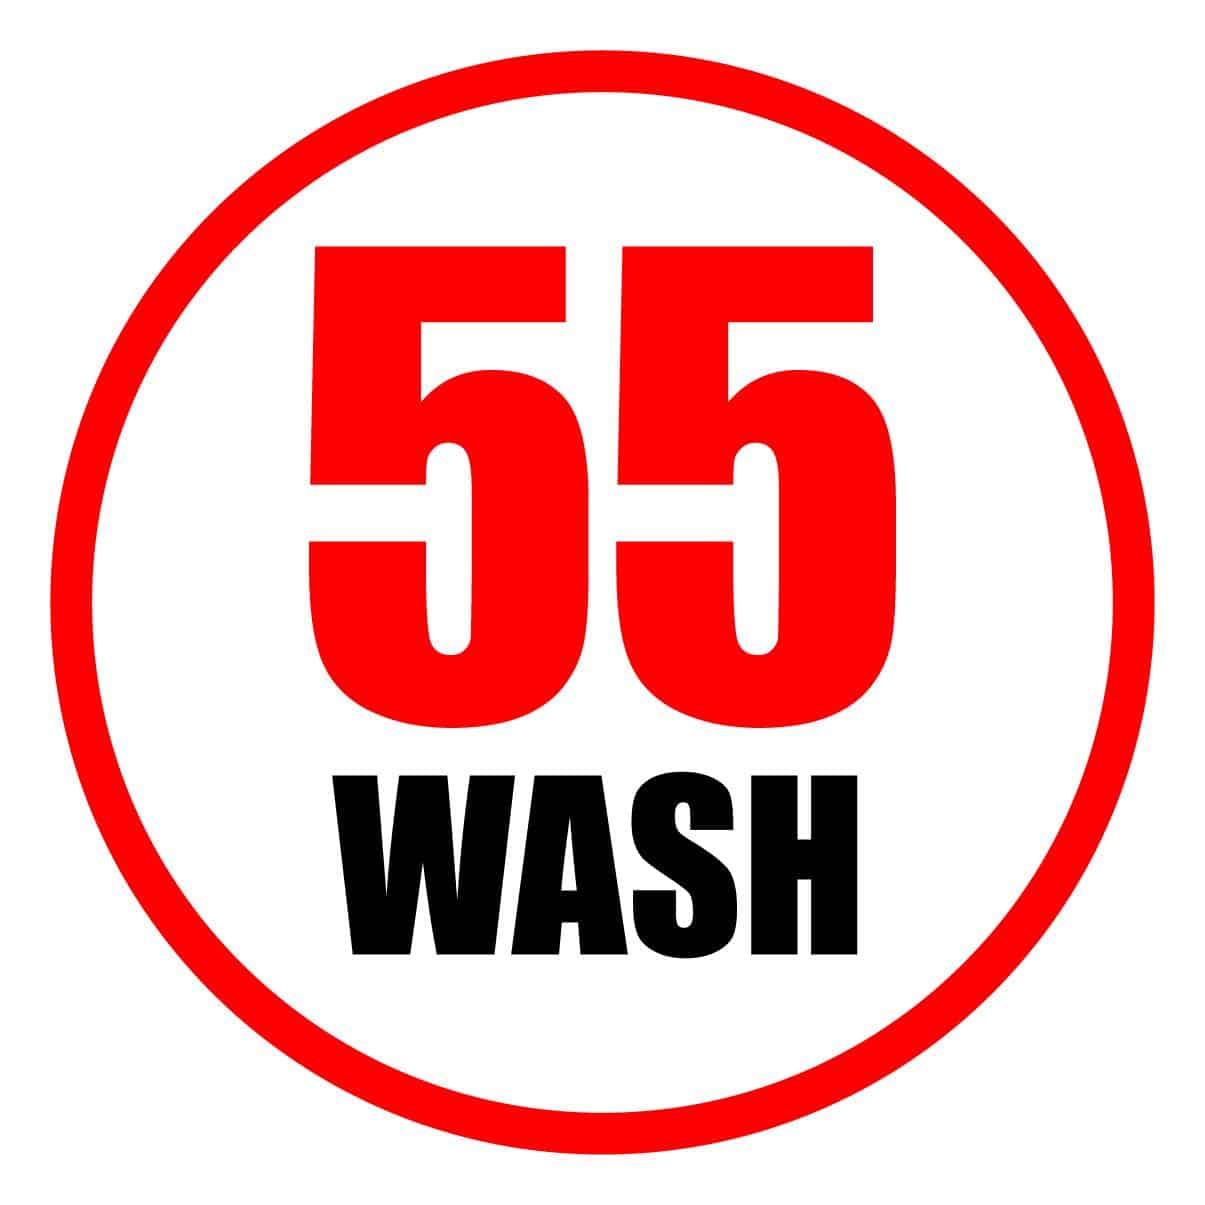 55 Wash